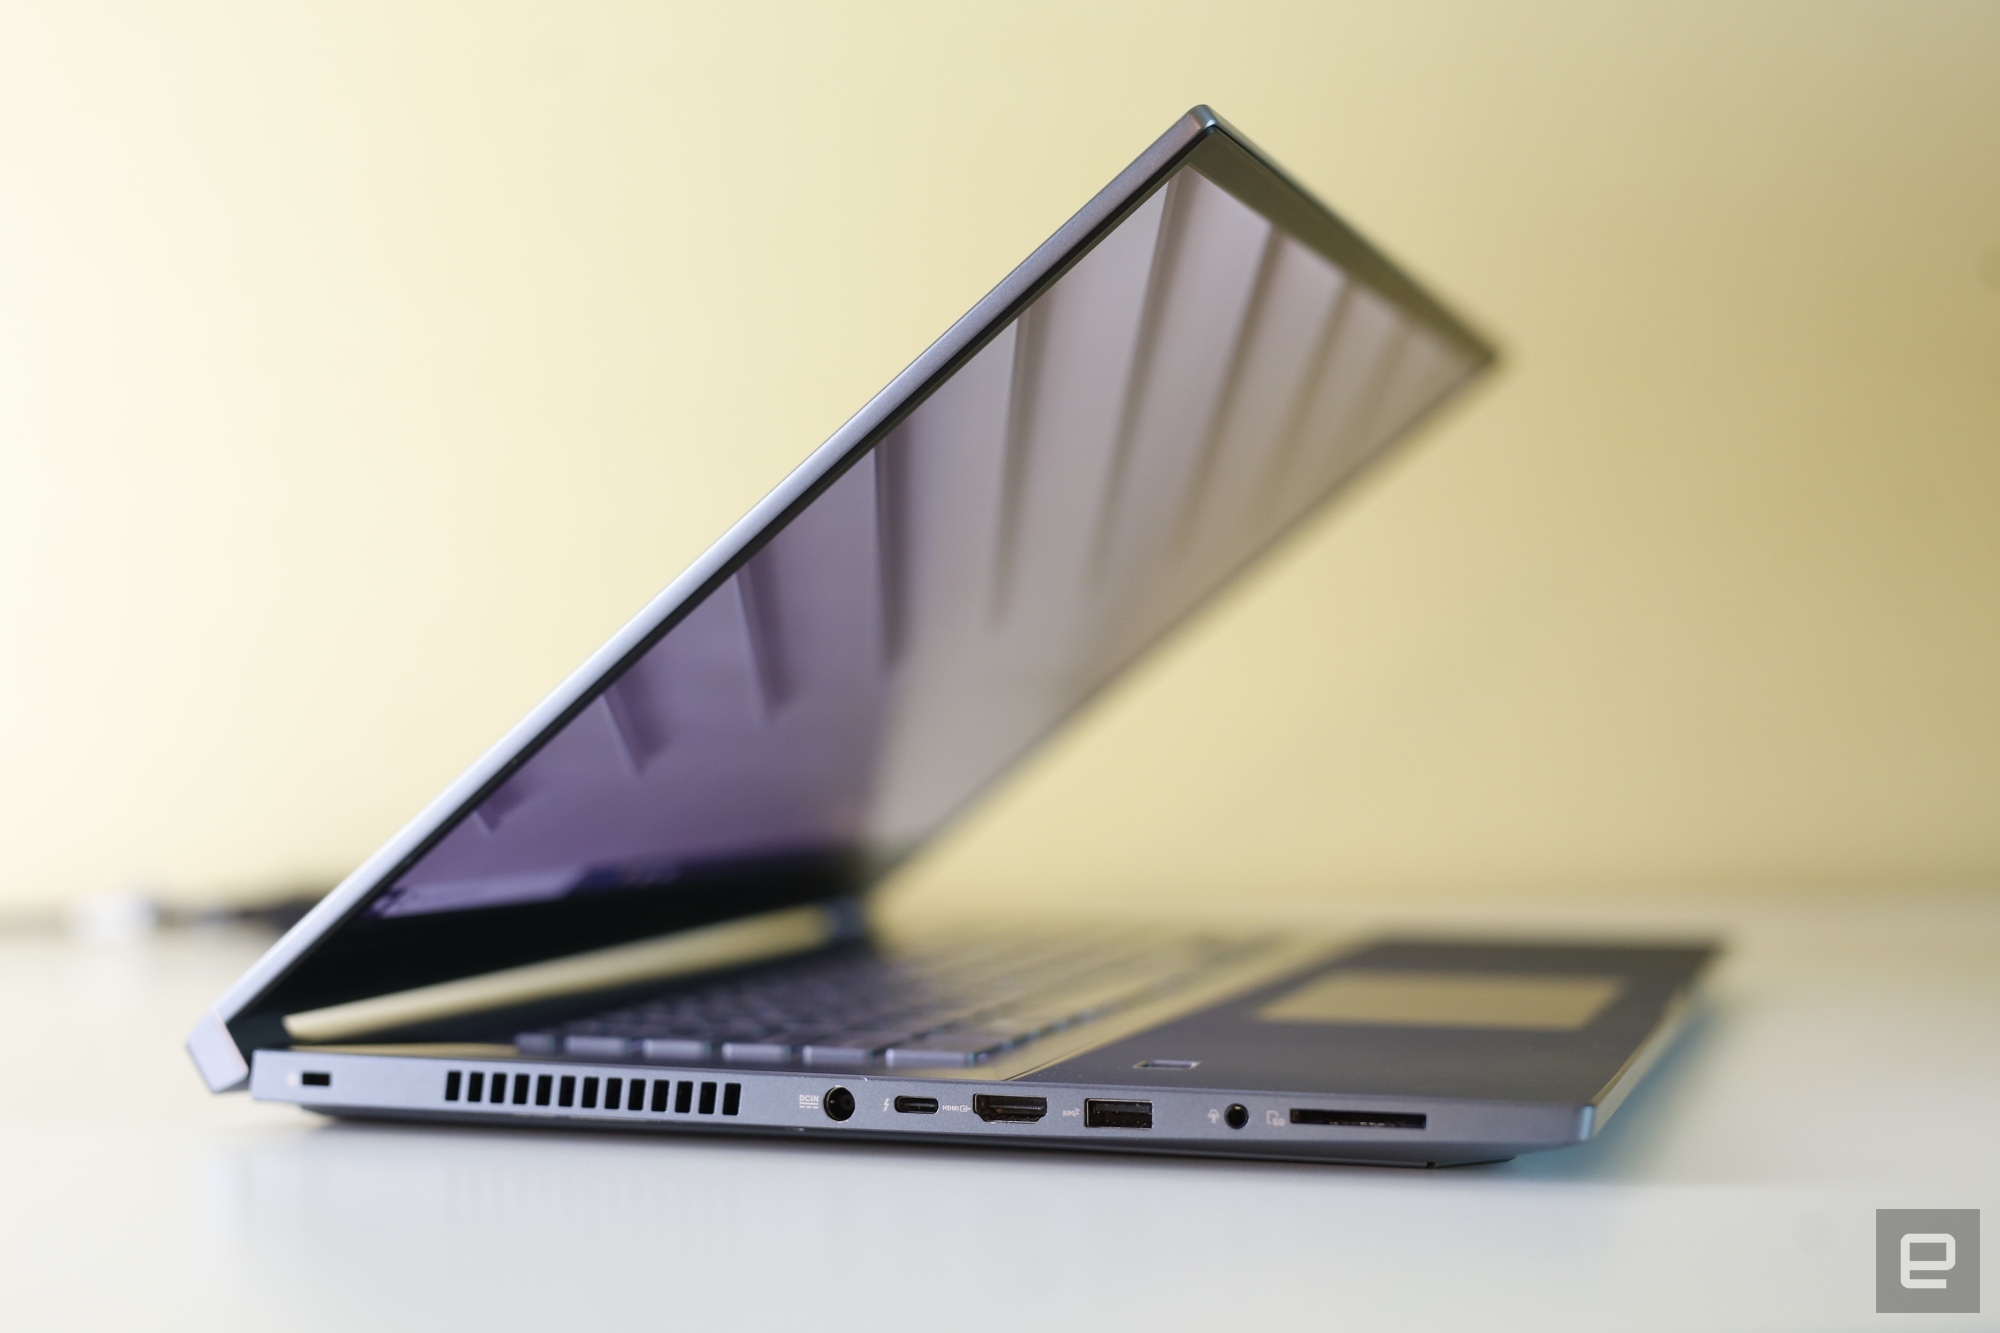 CES 2019: ASUS StudioBook S, chiếc laptop "máy trạm" di động dành cho những nhà sáng tạo